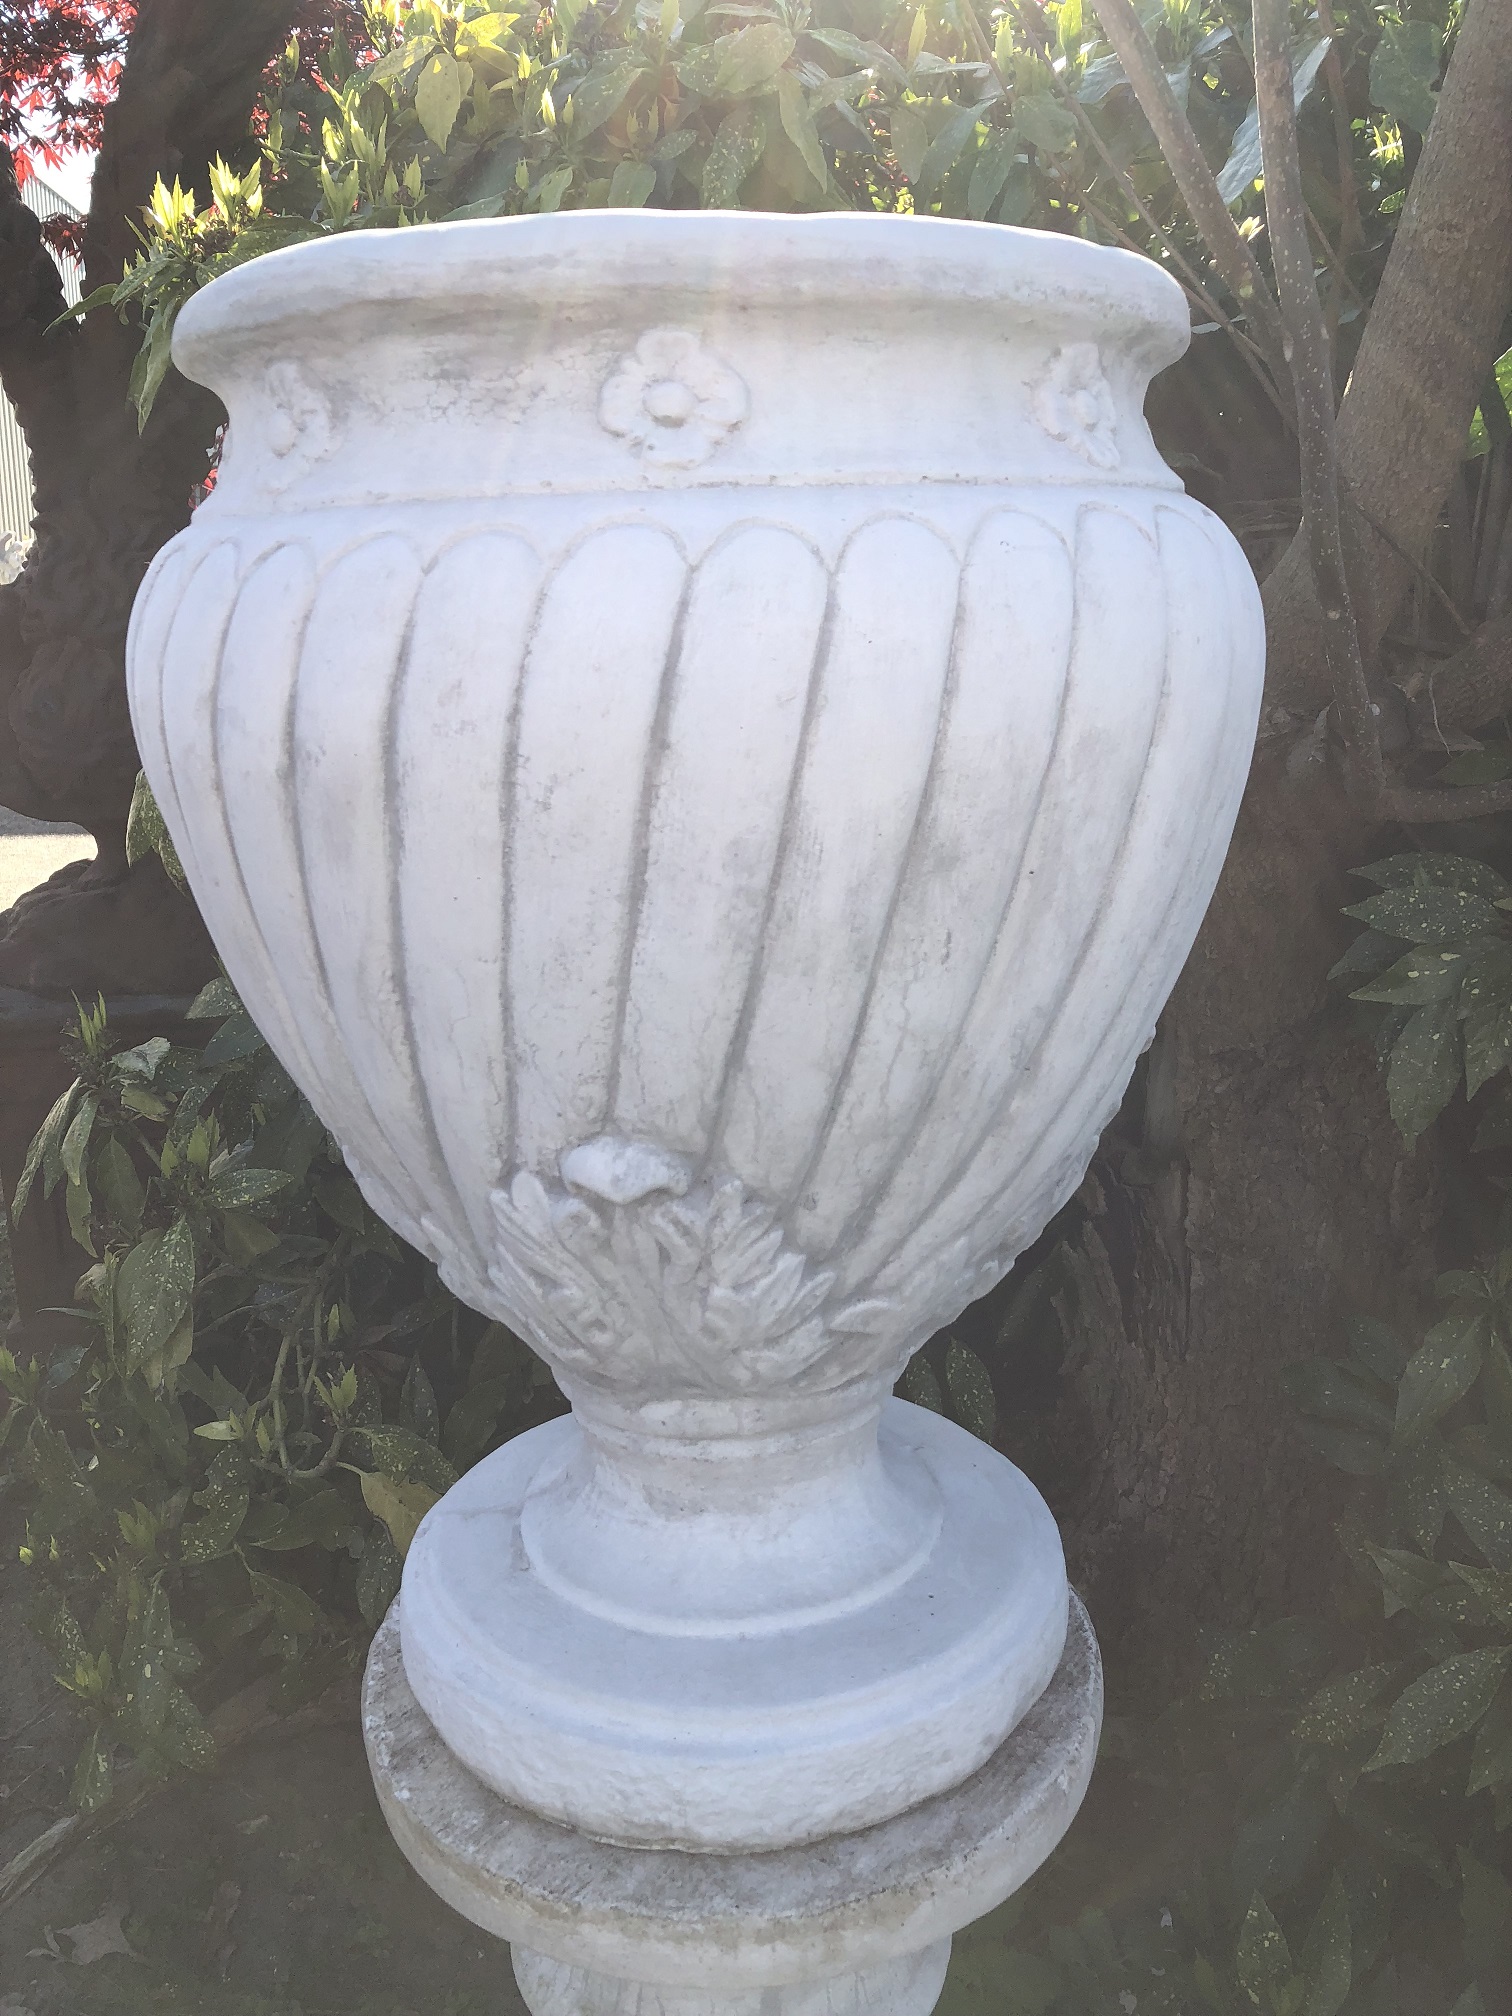 Schöne große Vase-Krug-Blumentopf auf Sockel, voll von Stein. Wunderschön!